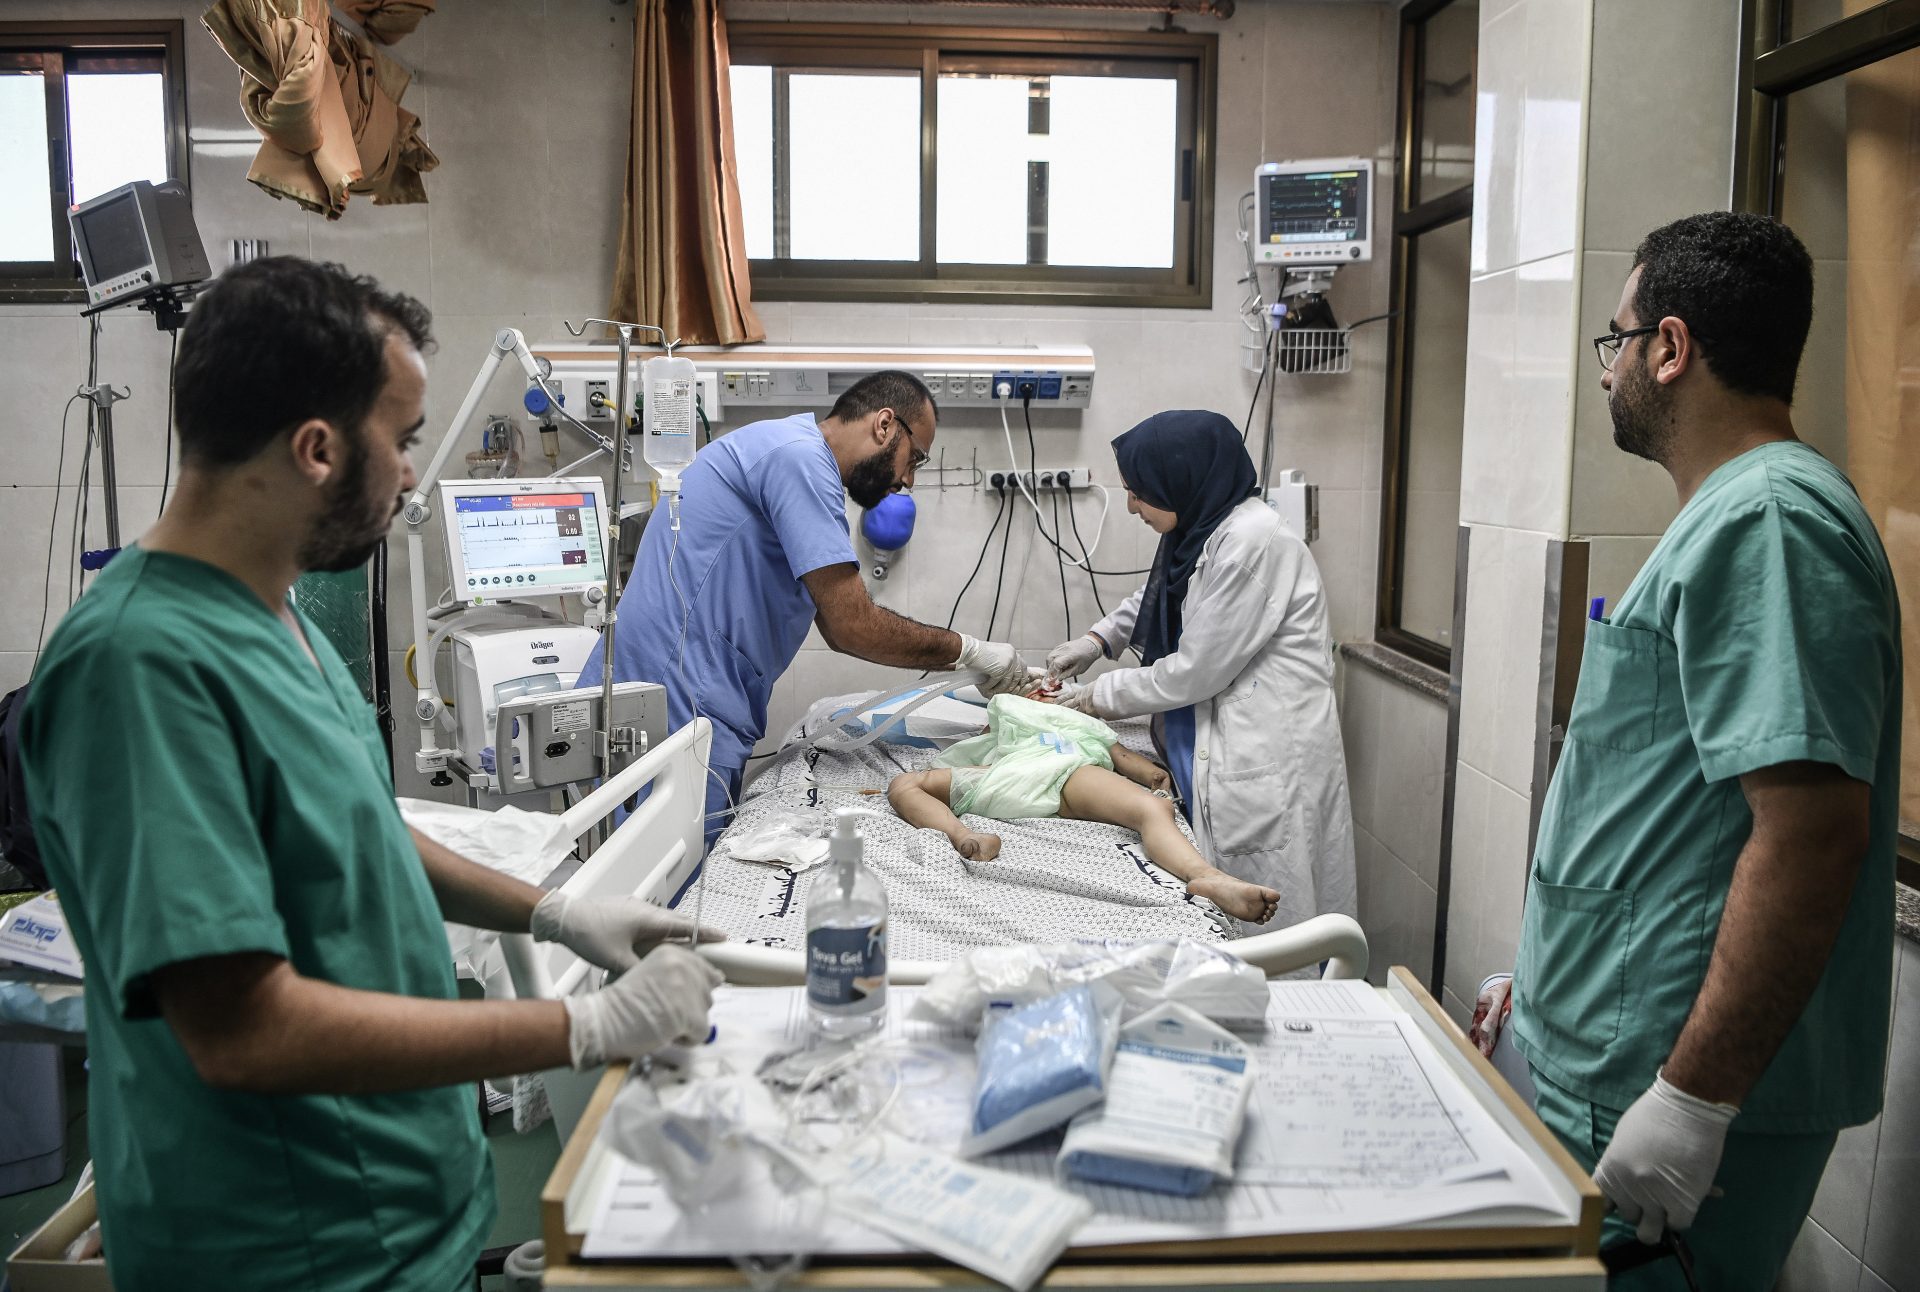 Le départ des médecins américains de Gaza annoncé par la Maison-Blanche